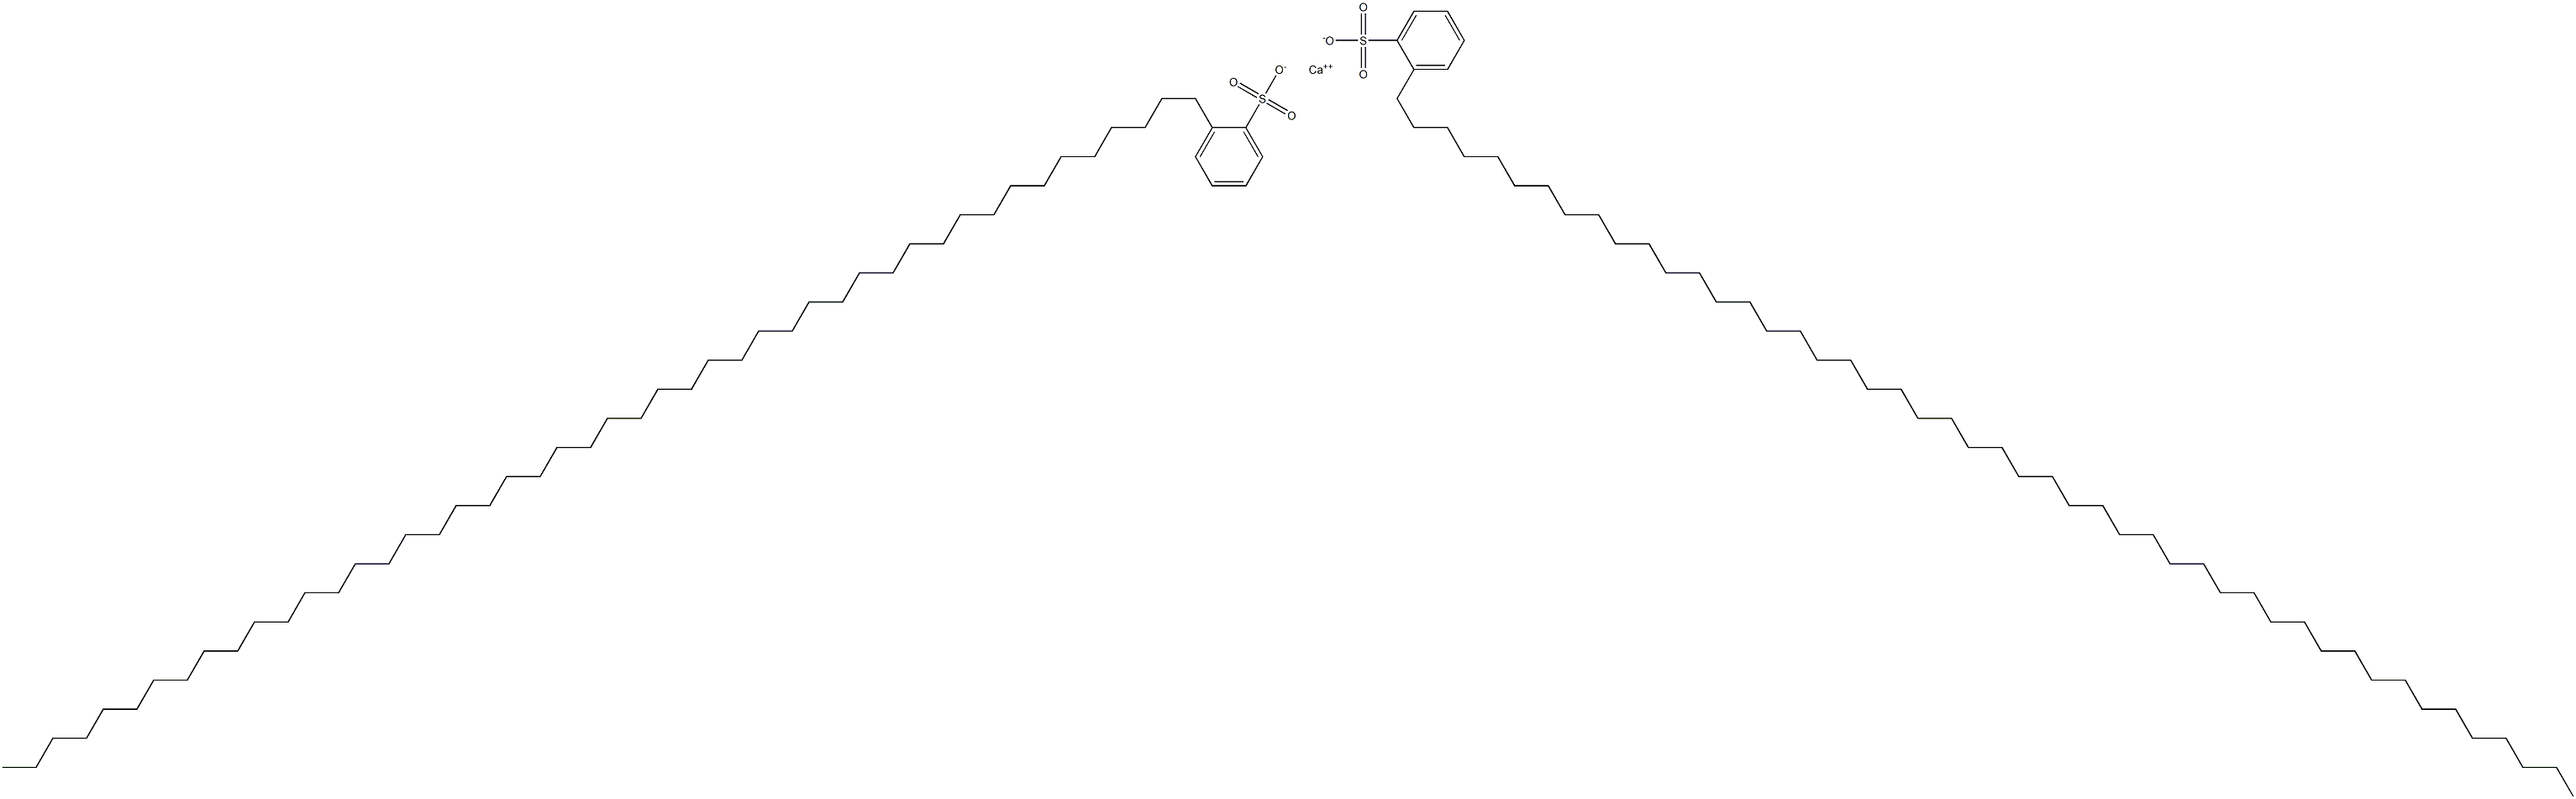 Bis[2-(octatetracontan-1-yl)benzenesulfonic acid]calcium salt|